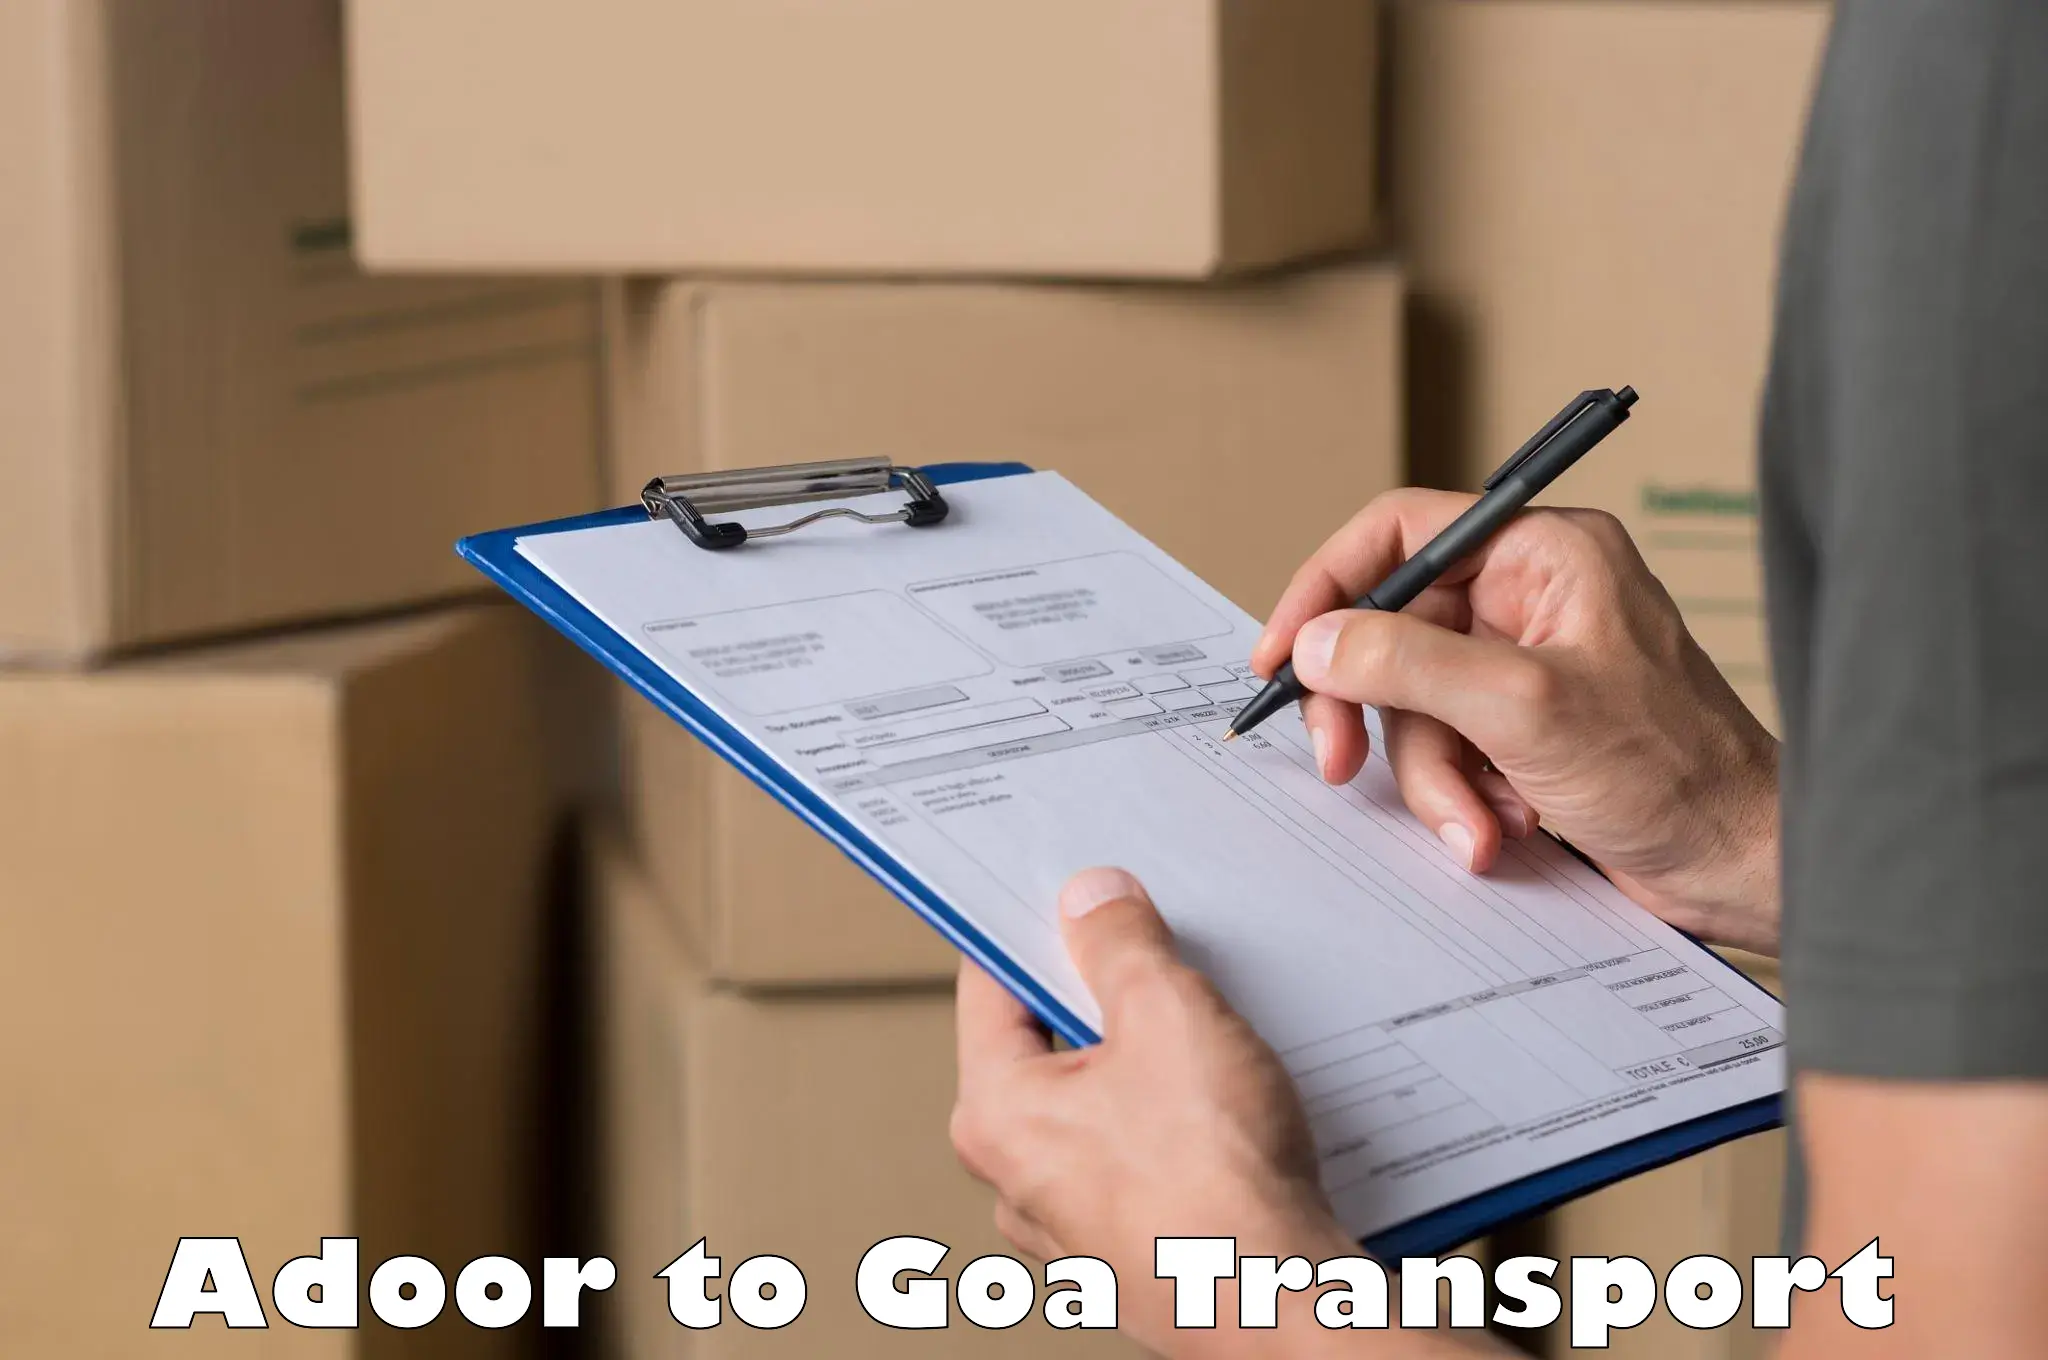 Online transport Adoor to IIT Goa